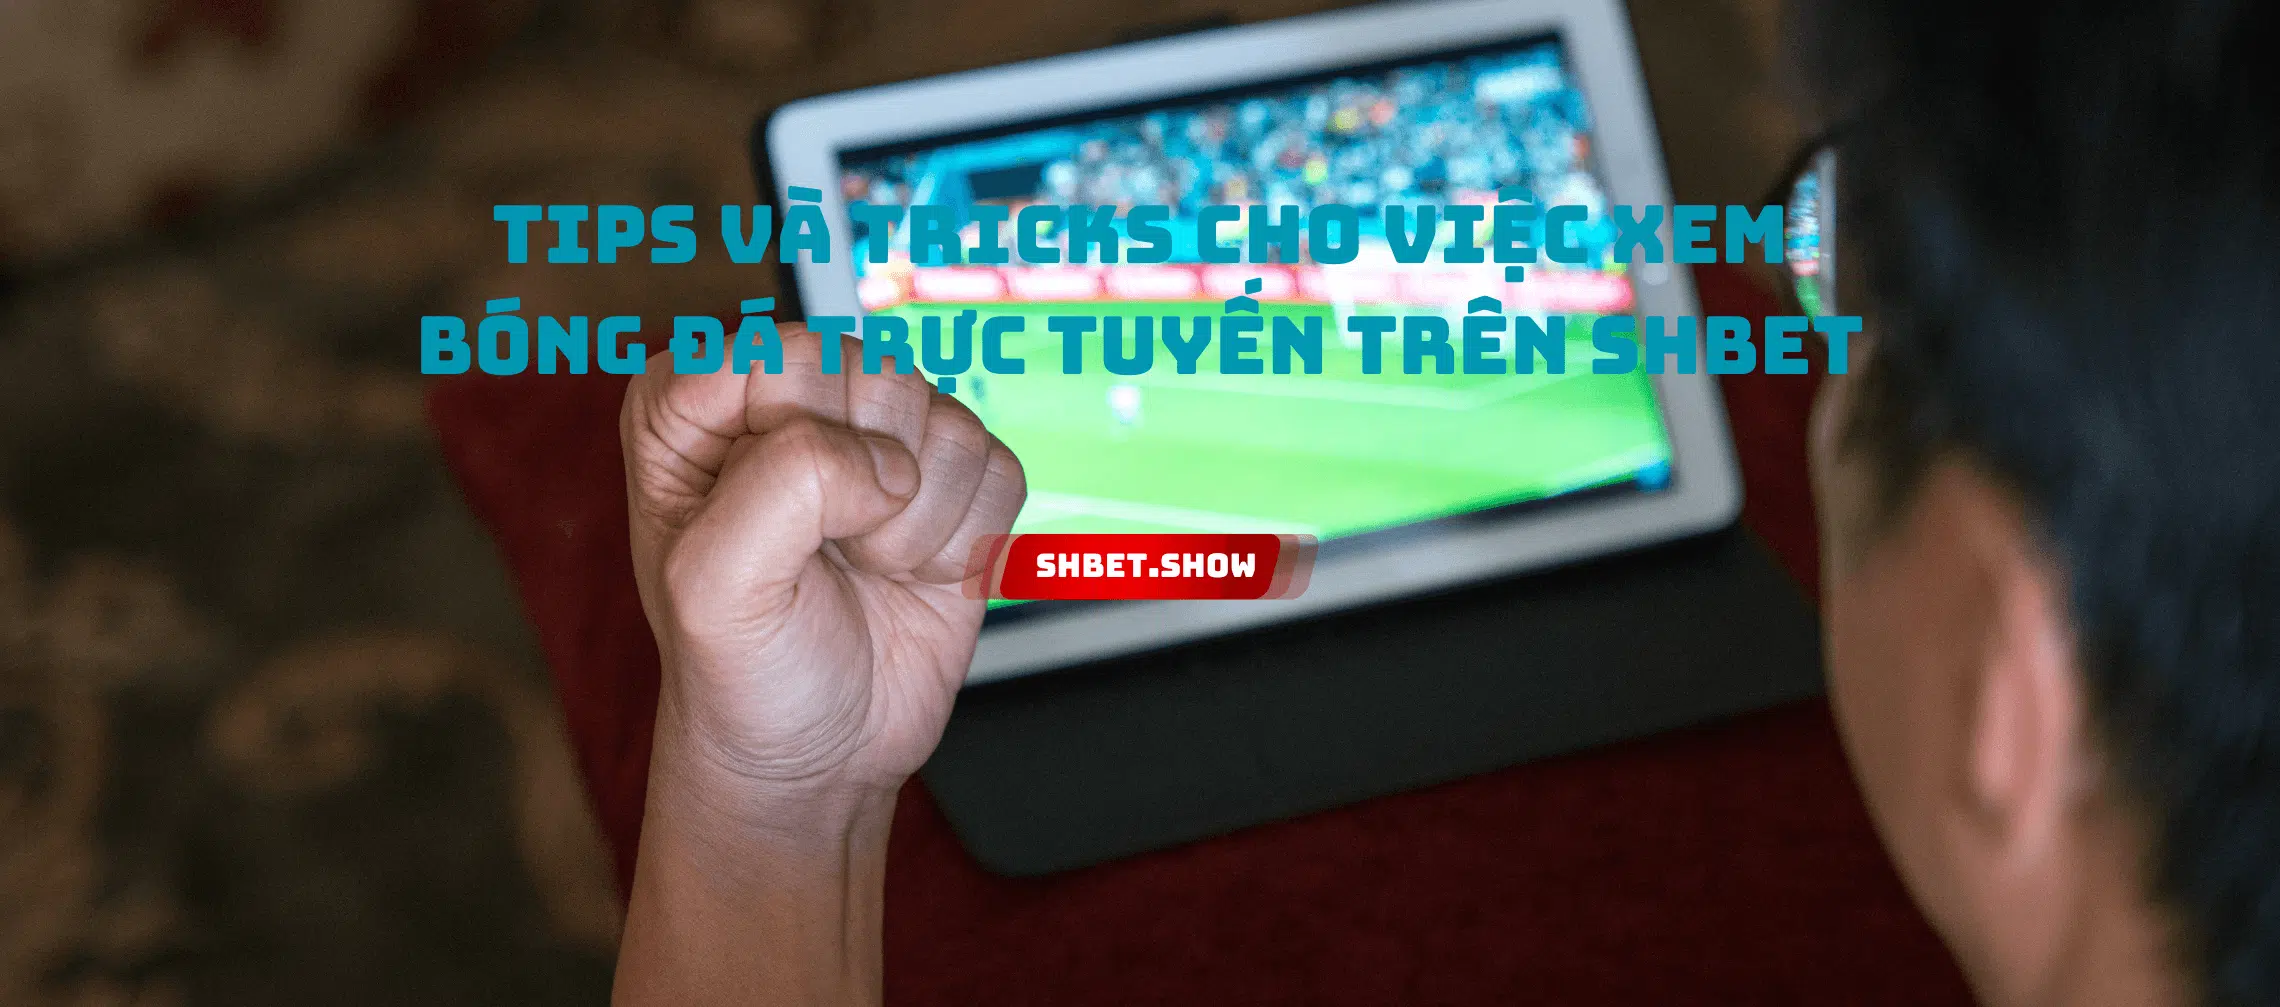 Tips và Tricks cho việc xem bóng đá trực tuyến trên SHBet